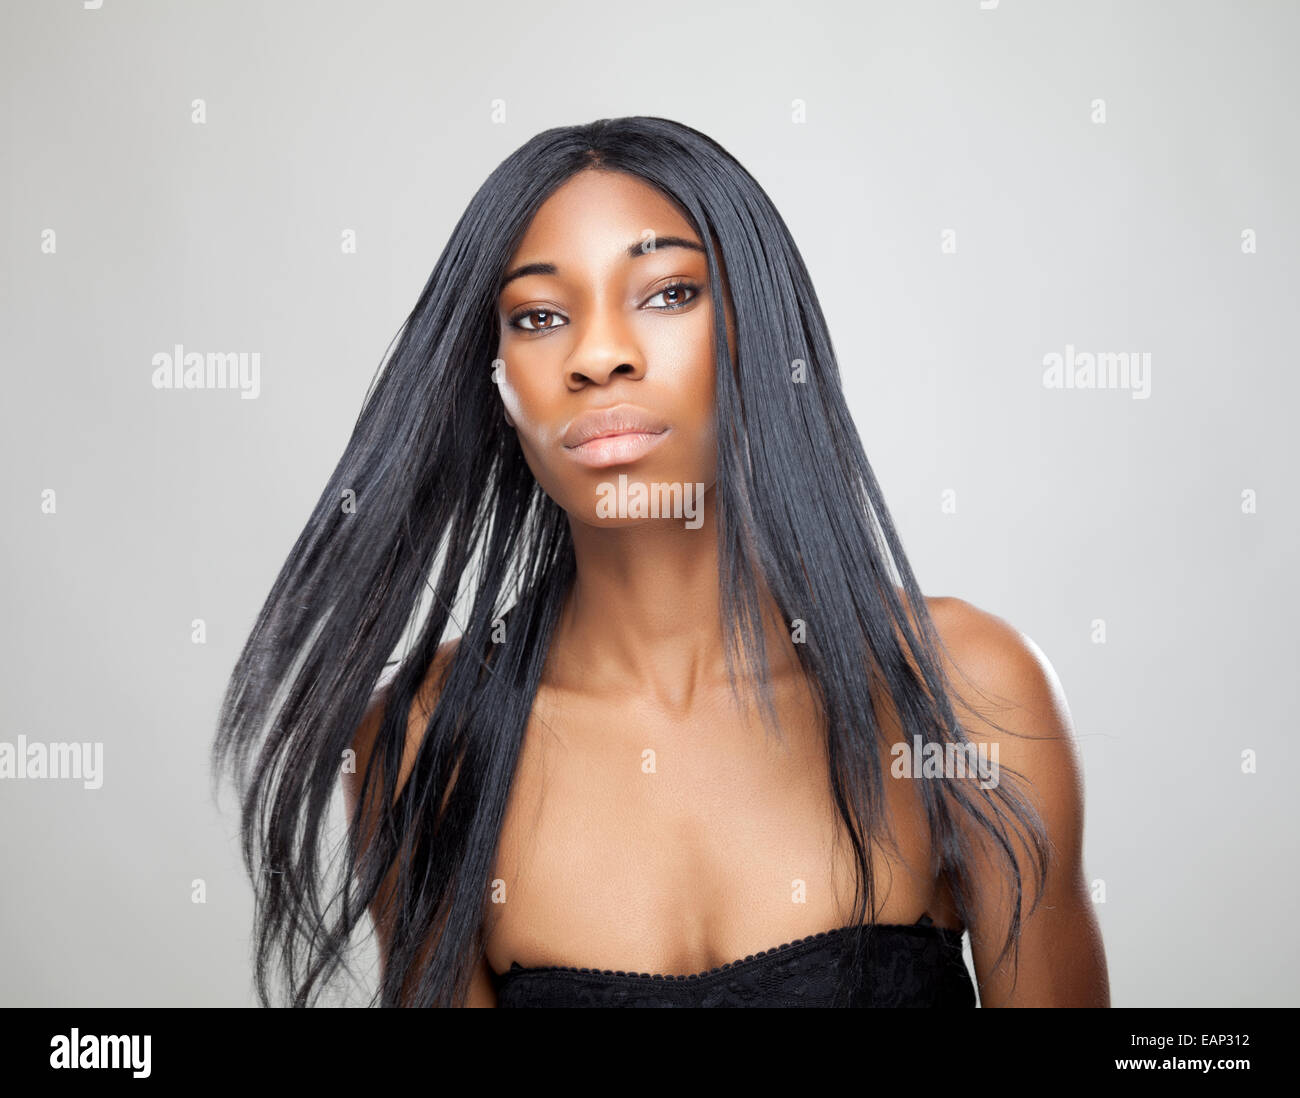 Belle femme noire avec de longs cheveux raides Banque D'Images